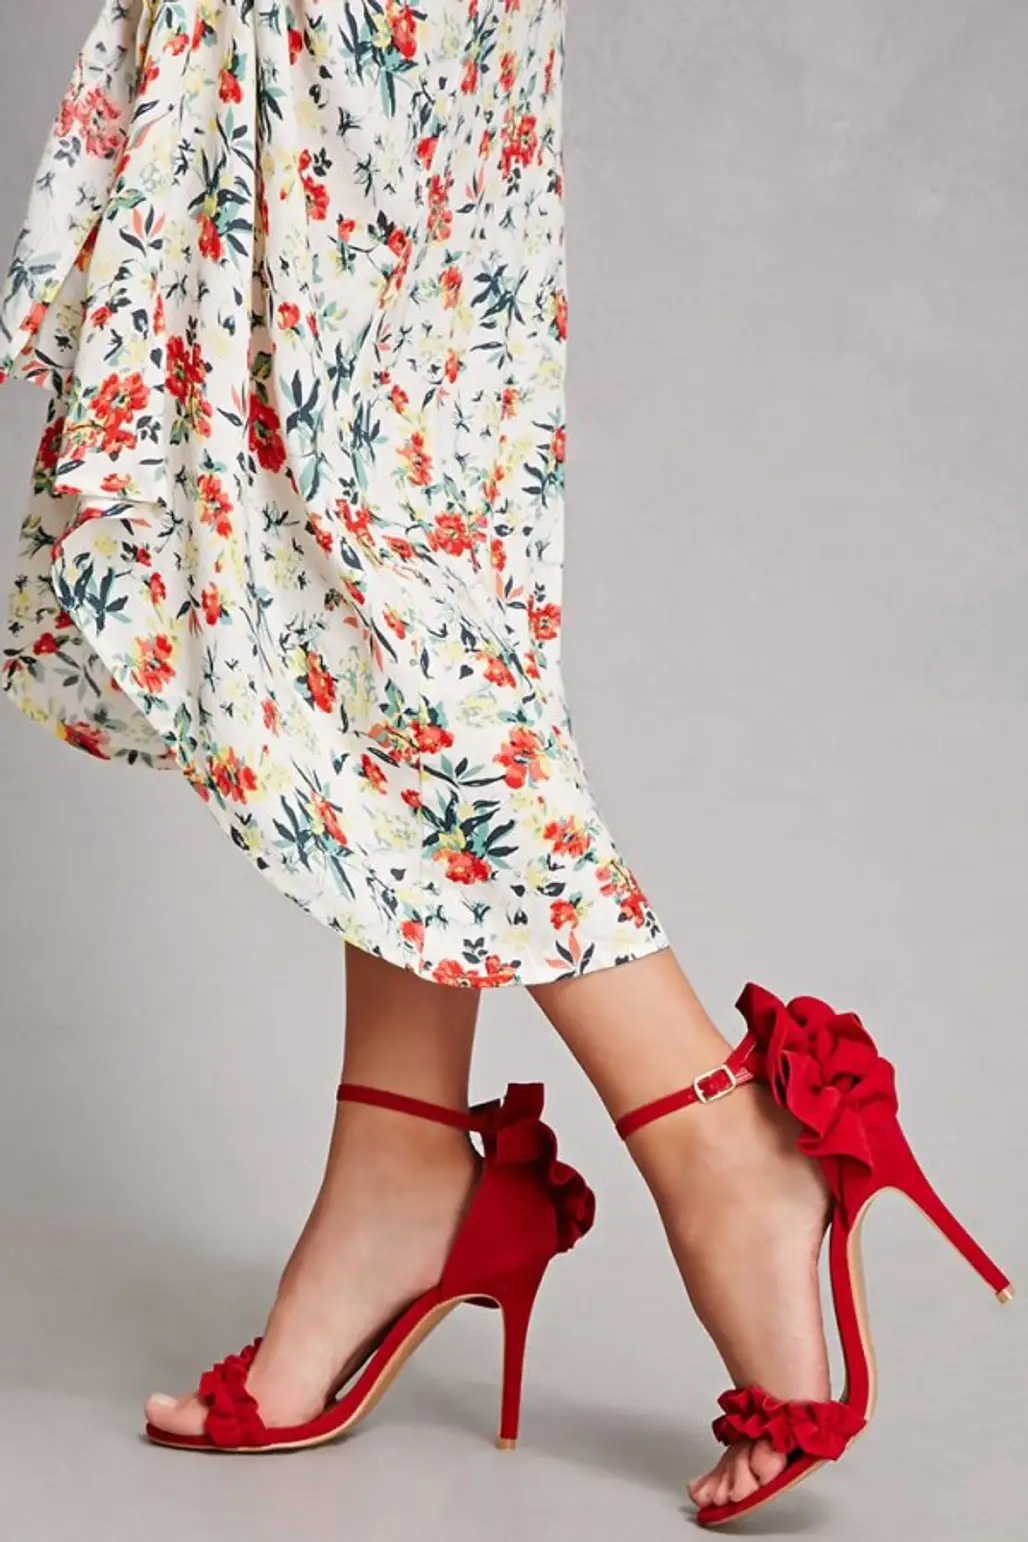 clothing, footwear, red, high heeled footwear, leg,